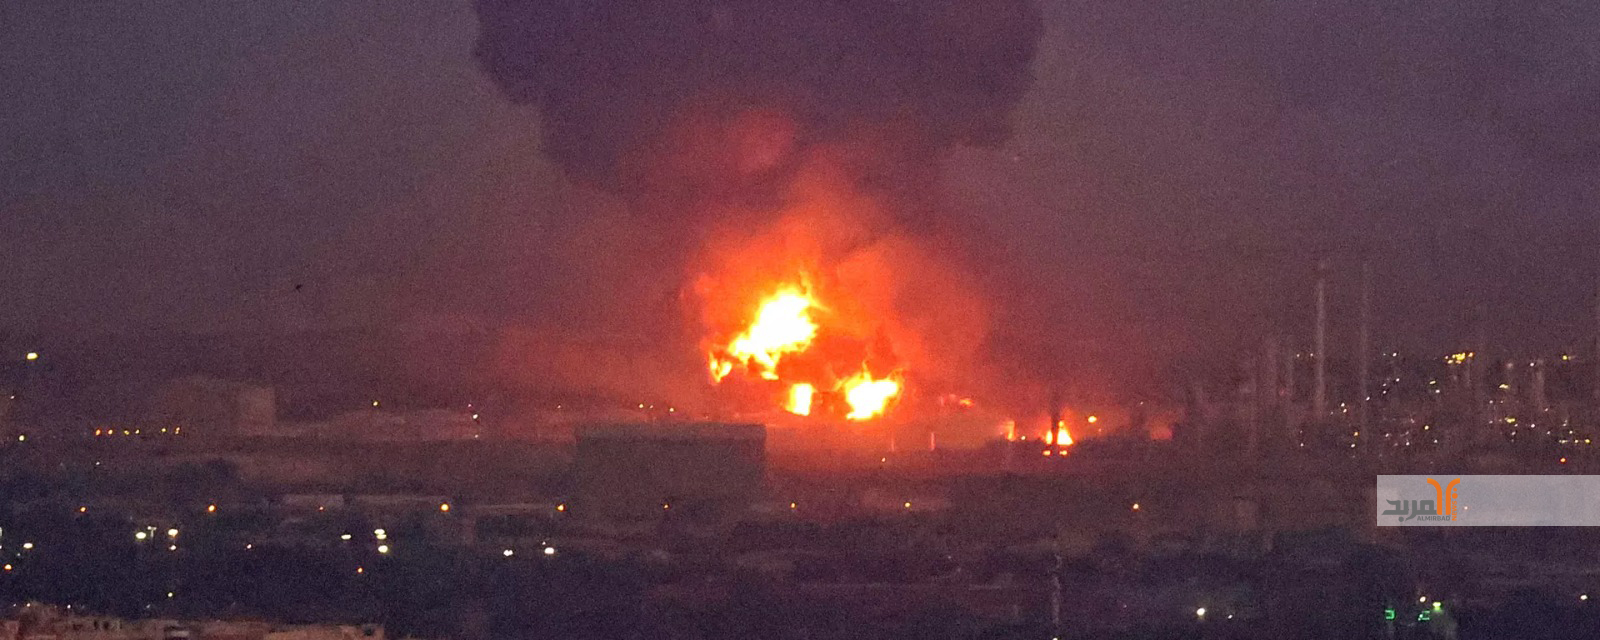 حريق هائل إثر انفجار خط لنقل الغاز وسط إيران .. وطهران تقول إنه عمل تخريبي   